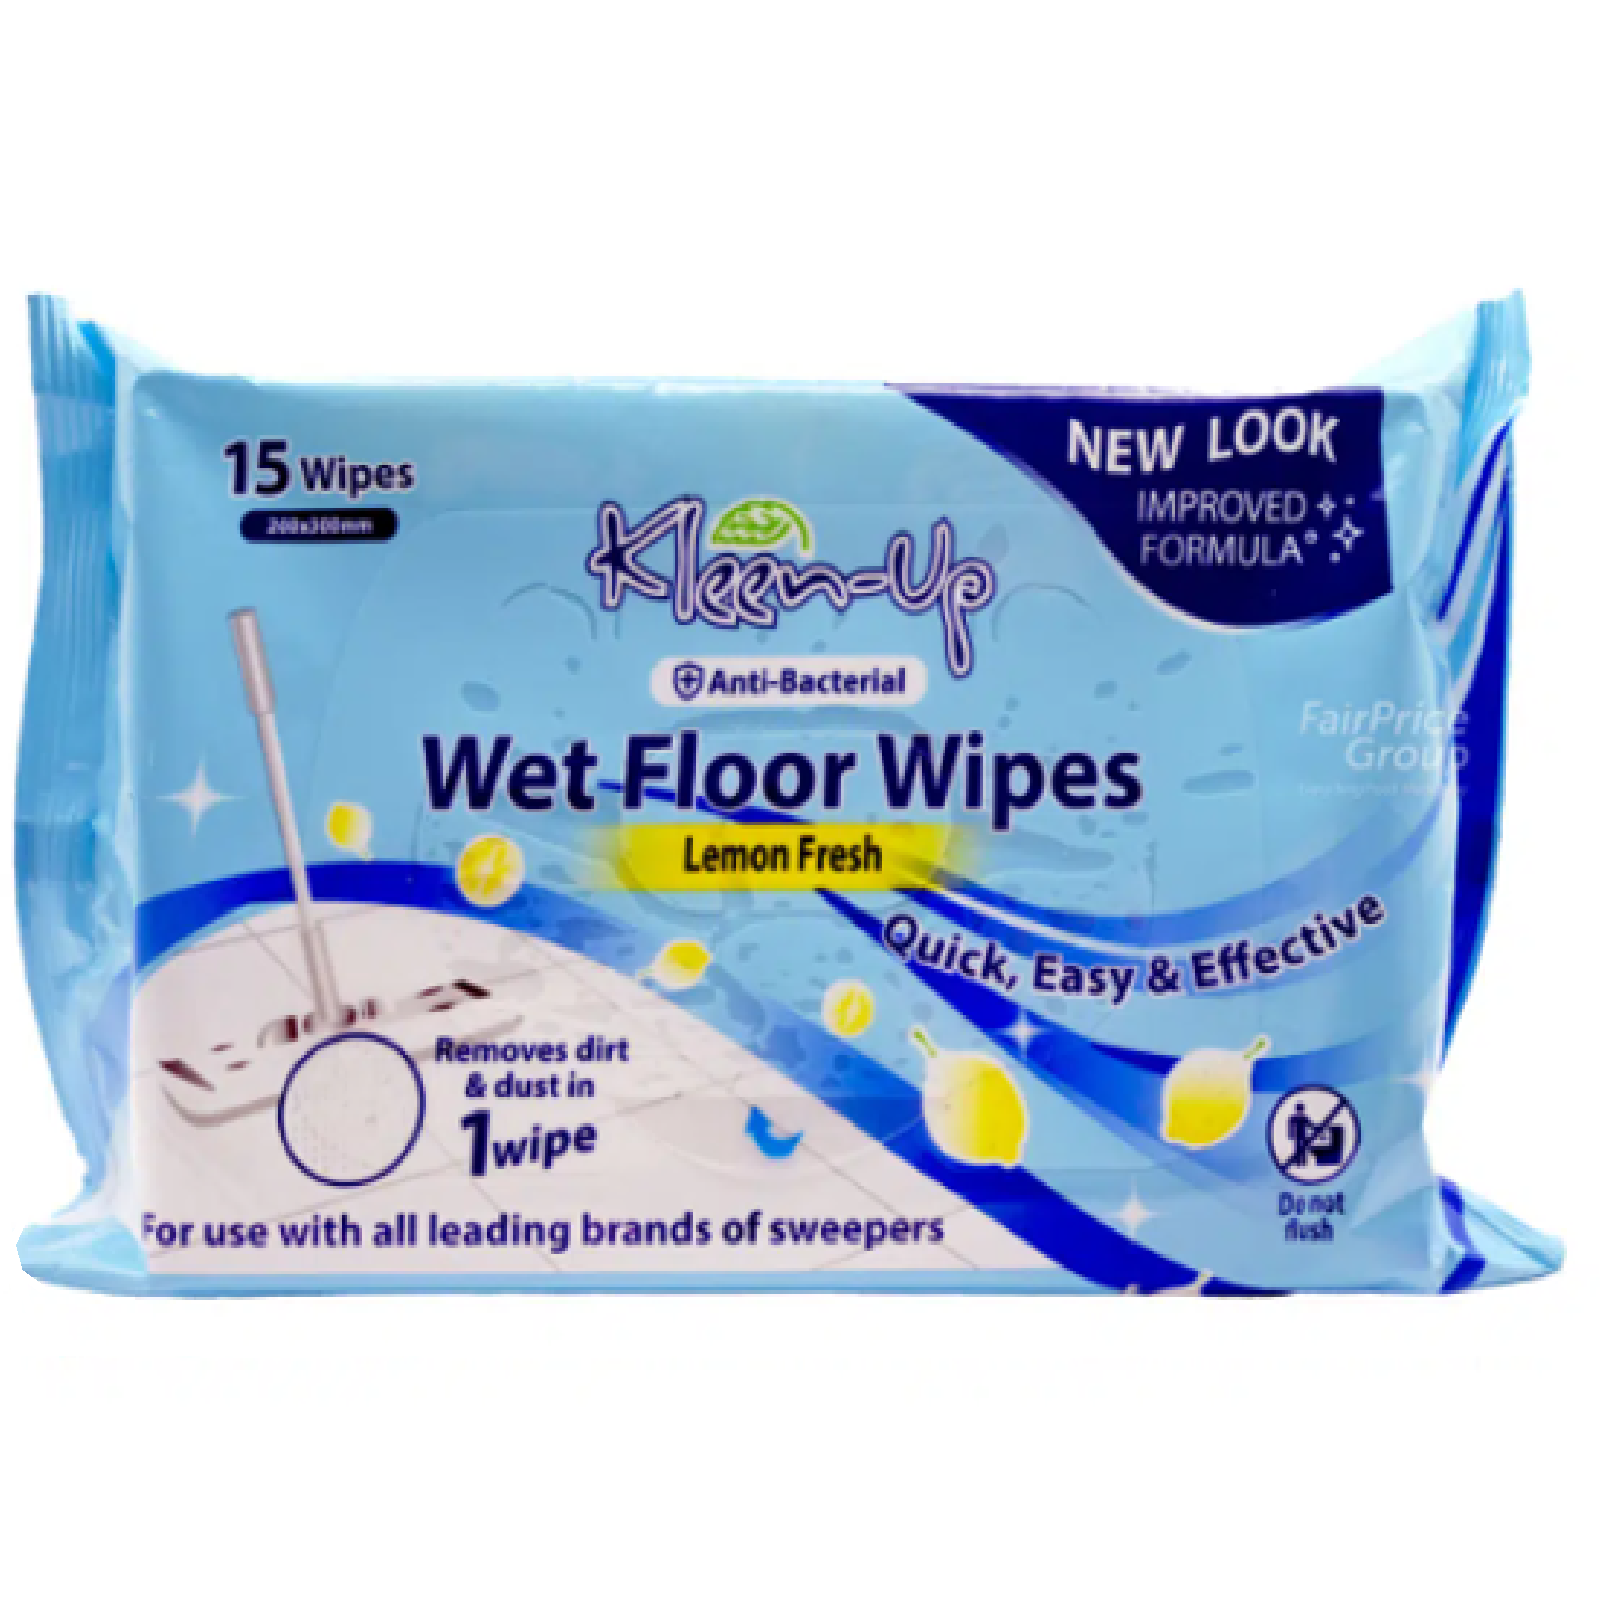 KLEEN-UP Wet Floor Wipes 15s LEMON FRESH